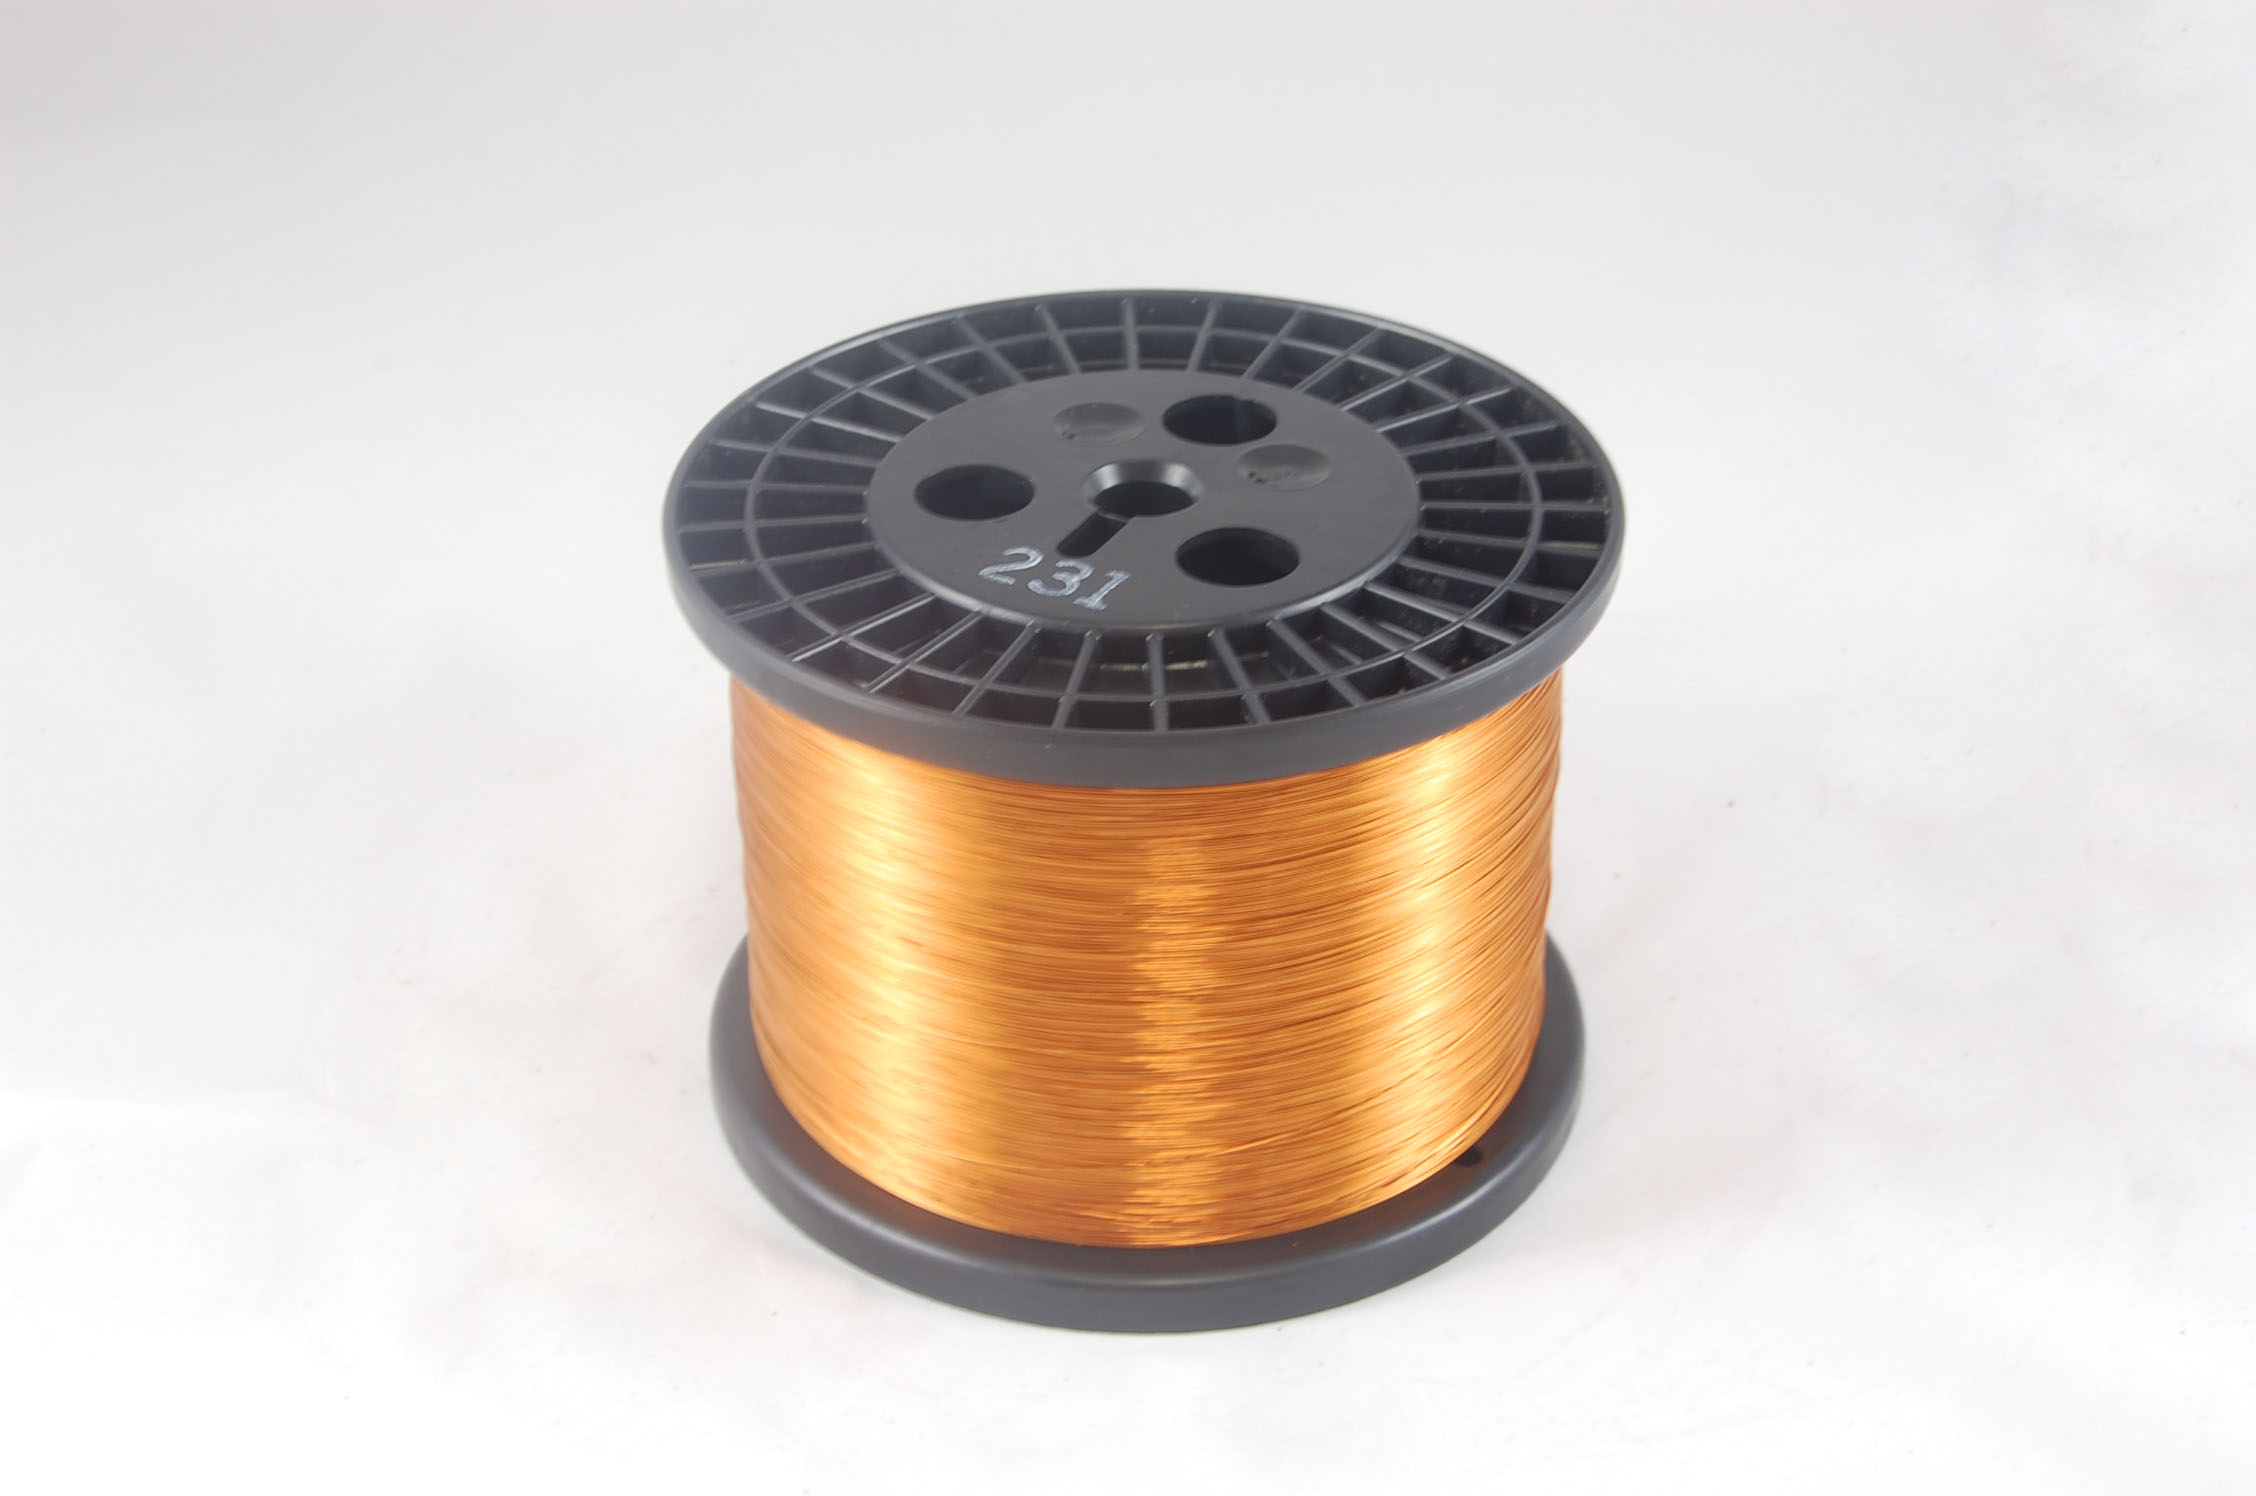 #28 Heavy GP/MR-200 Round MW 35 Copper Magnet Wire 200°C, copper, 10 LB 6" spool (average wght.)